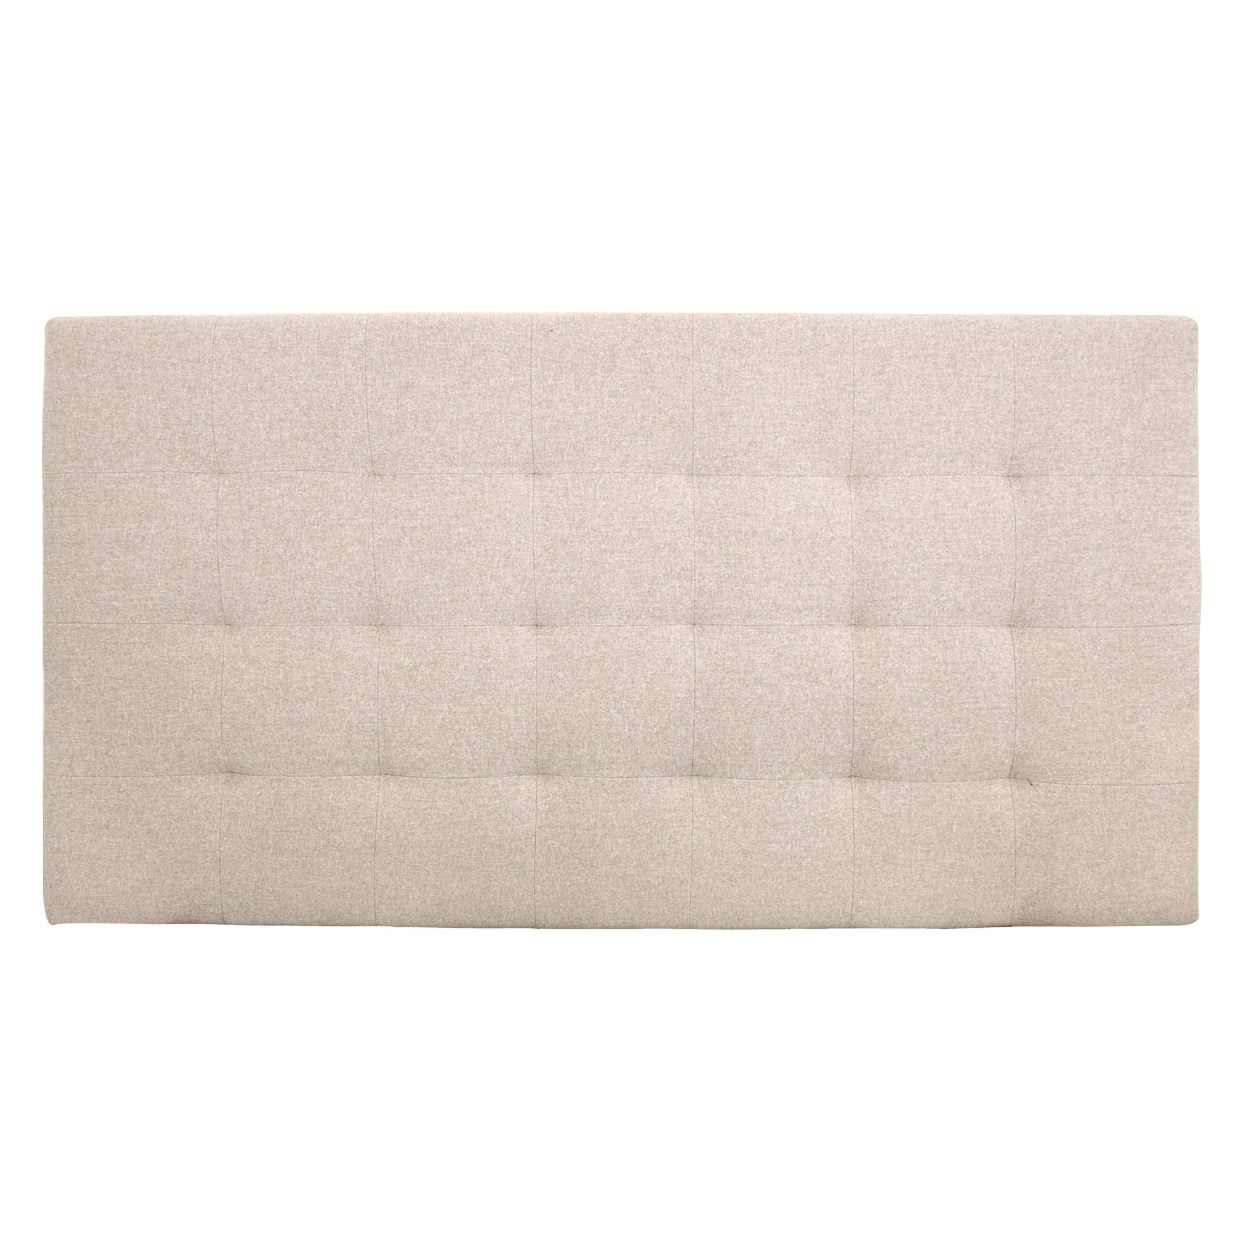 Tête de lit polyester plis couleur beige 200x80cm